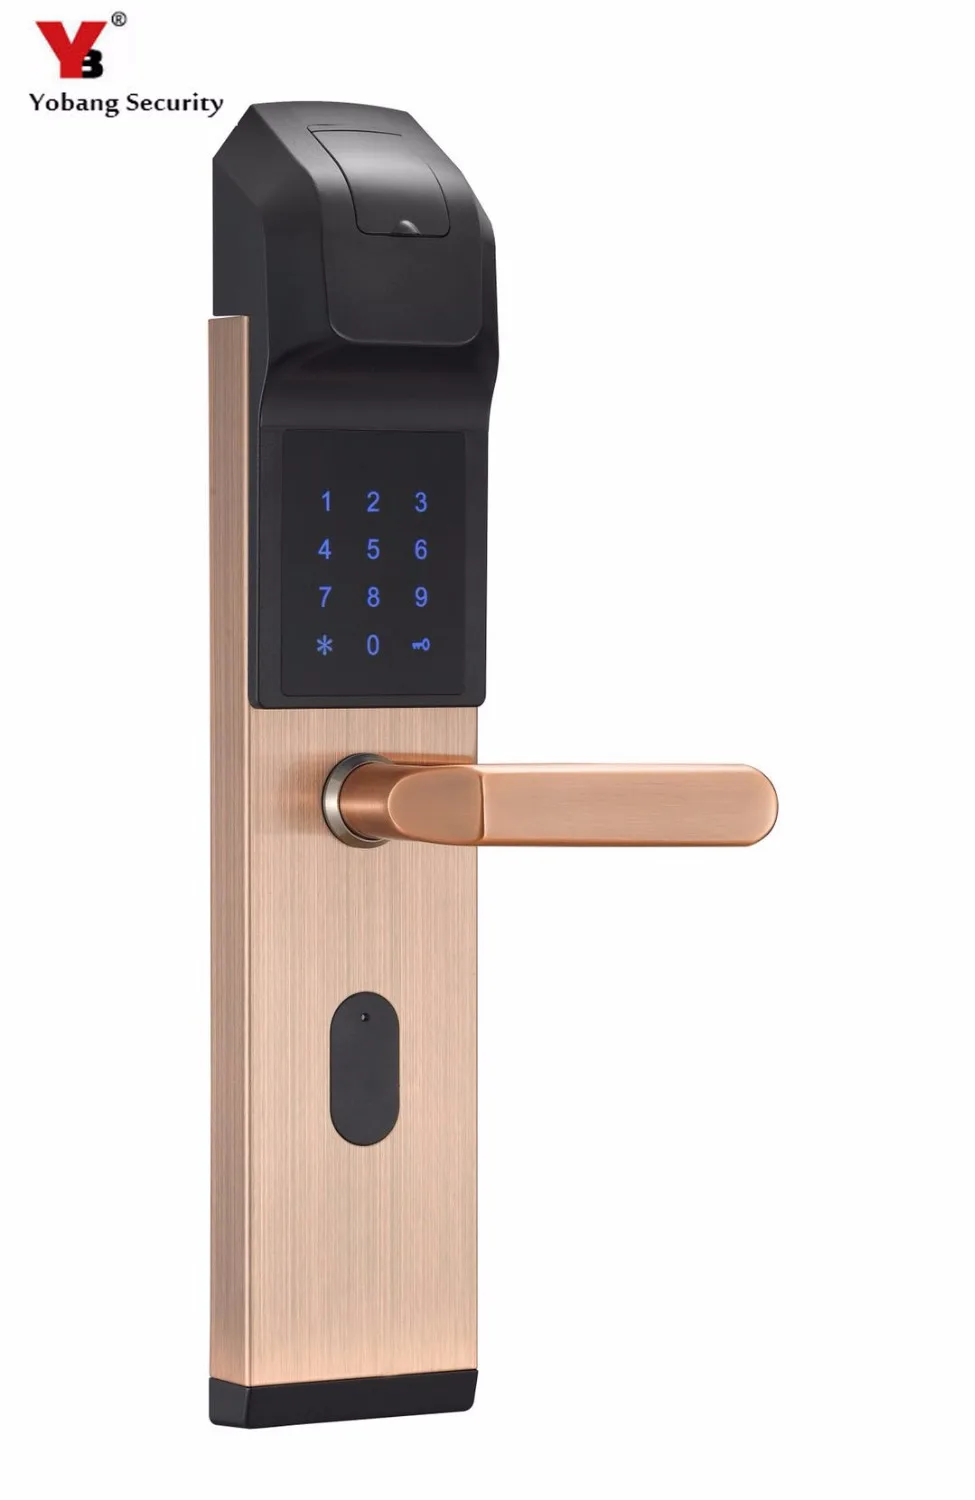 Электронный биометрический дверной замок без ключа цифровой дверной замок отпечаток пальца + пароль + 4 карты + 2 механических ключа для дома